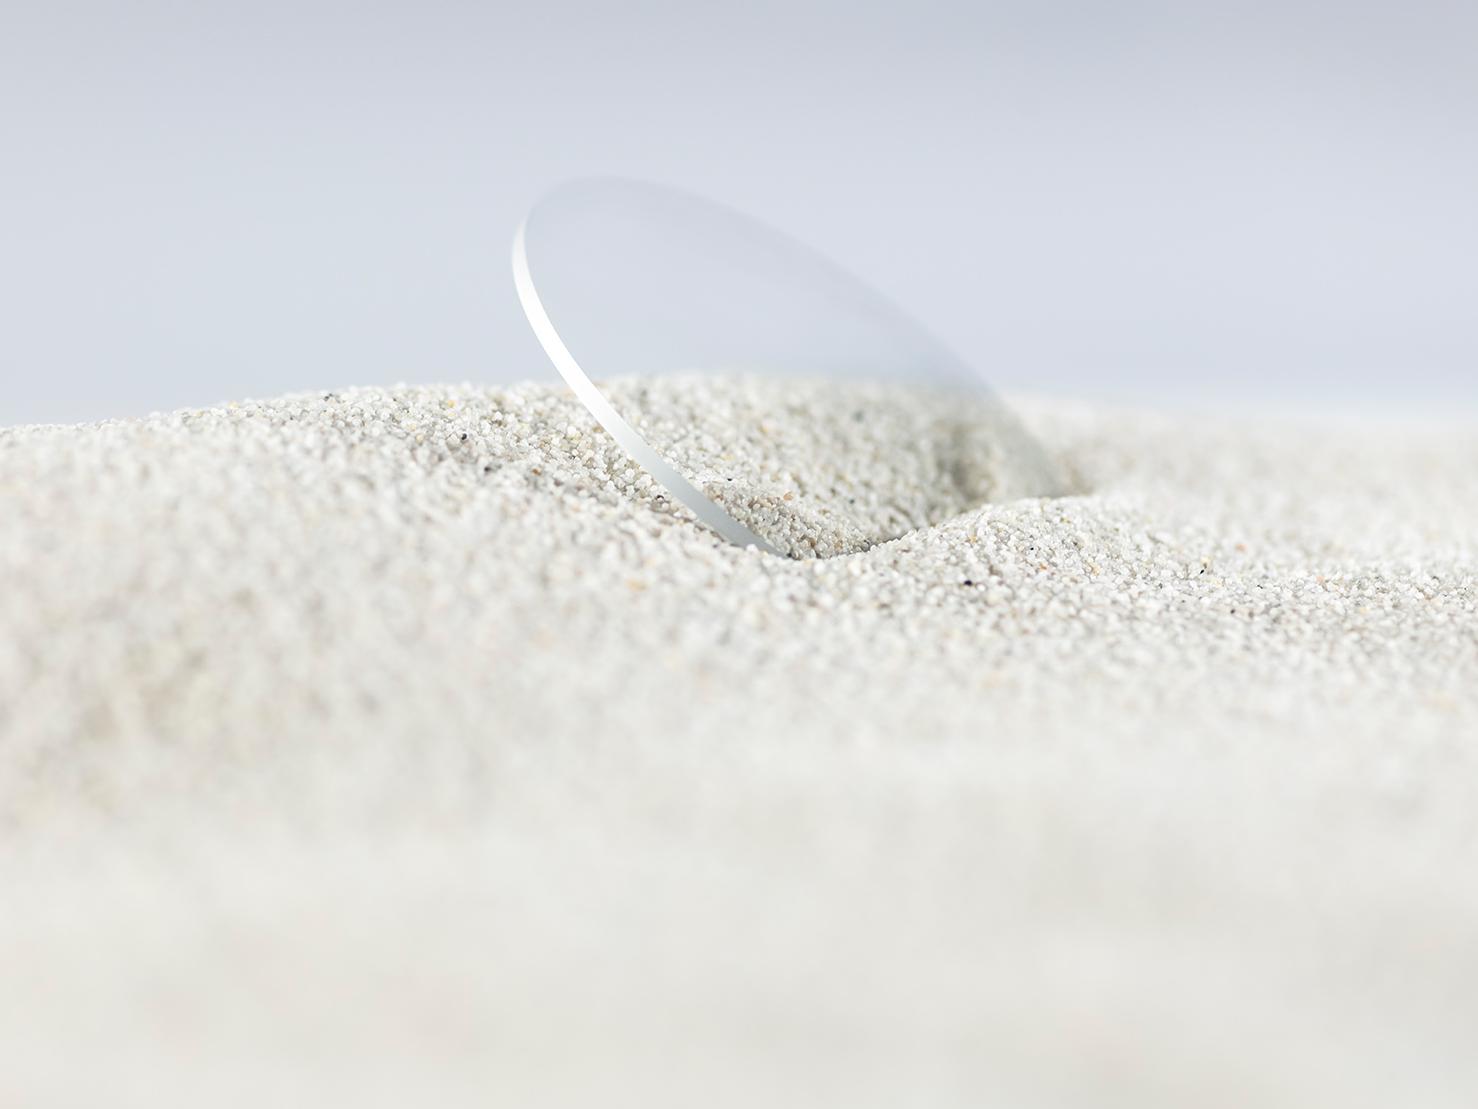 Et ZEISS brilleglas med en holdbar coating er dækket til med groft sand, men er stadig fri for ridser.